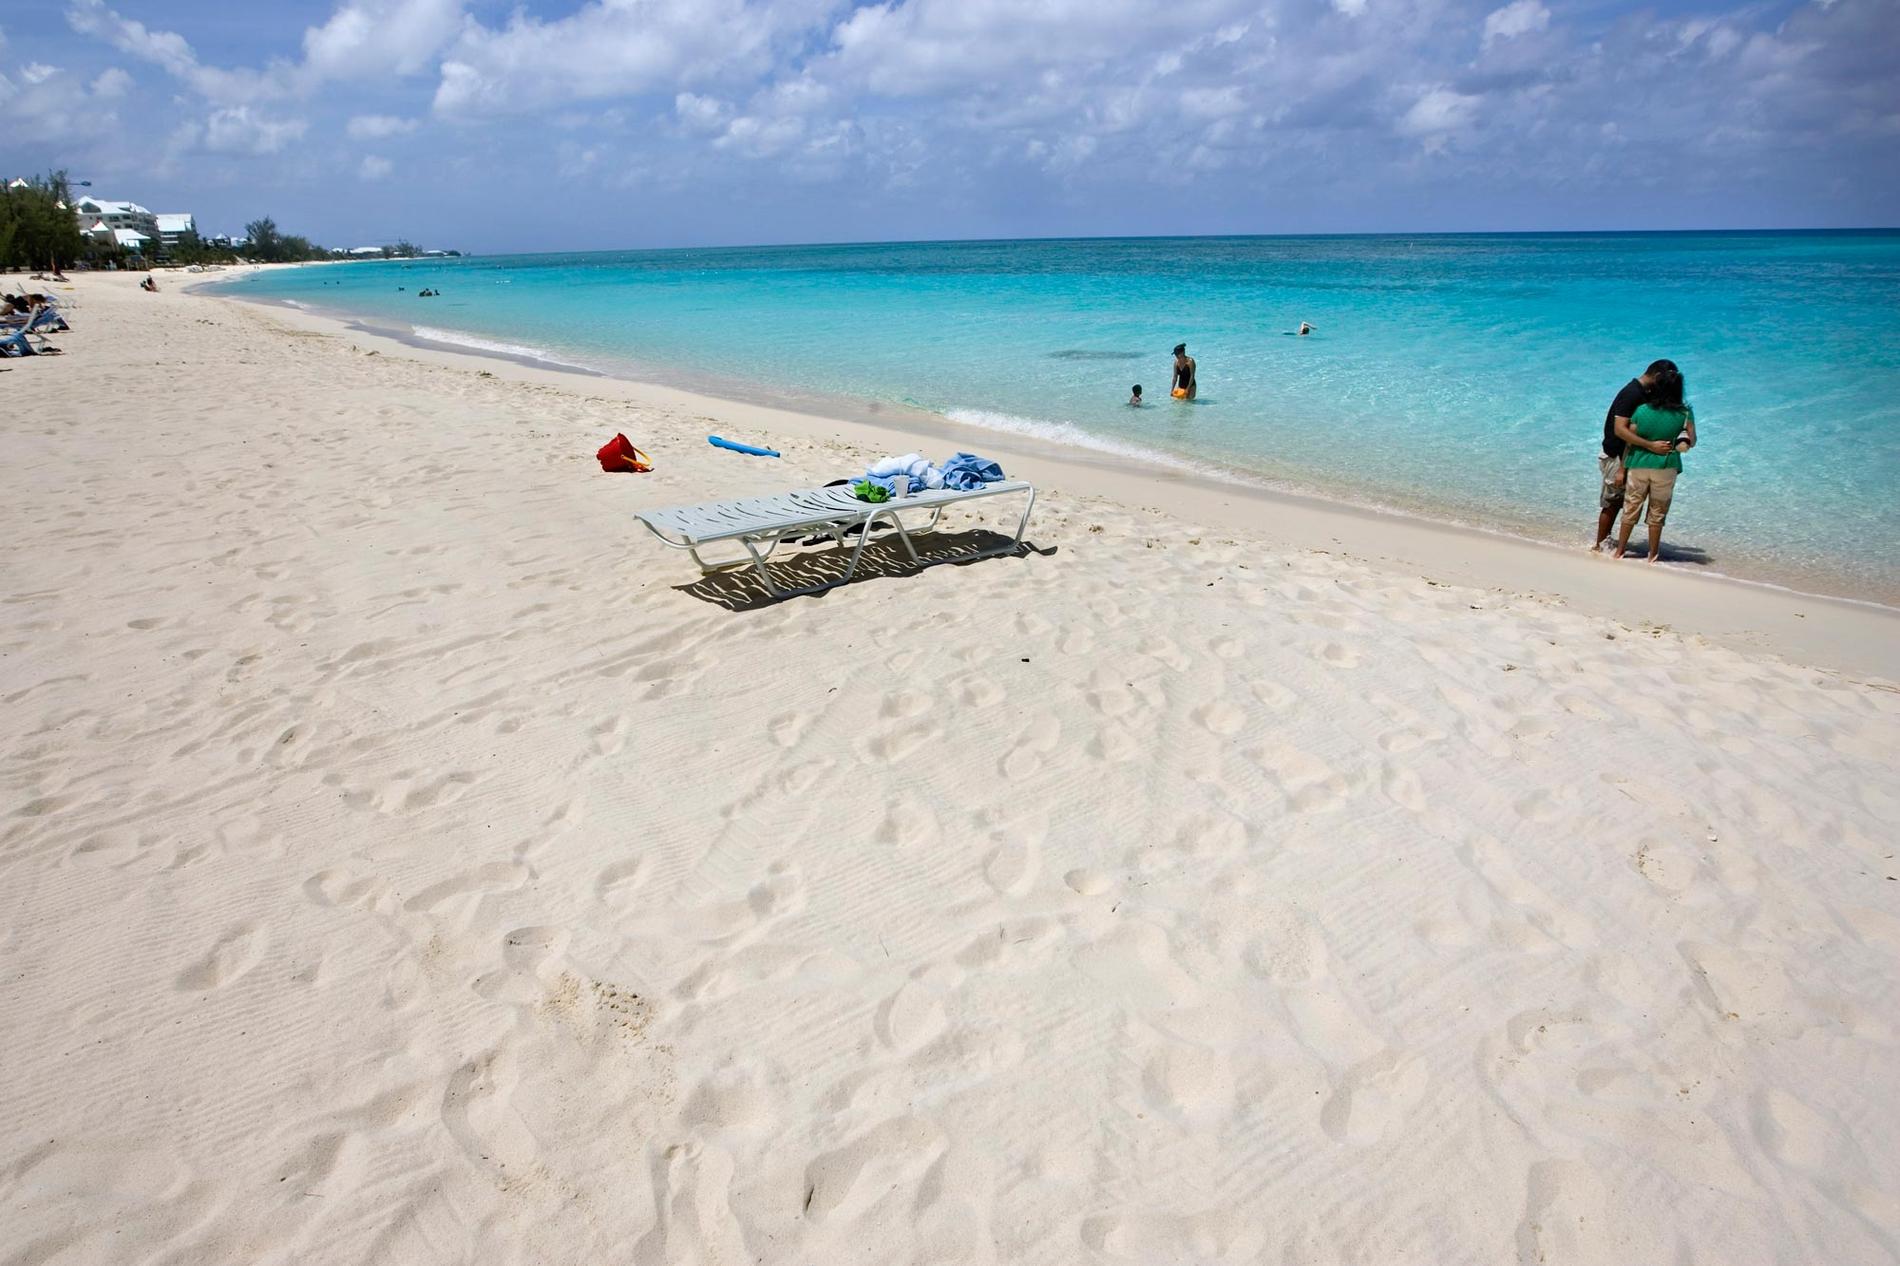 7. Seven Mile Beach, Caymanöarna Trots sitt namn är stranden bara 5,5 miles (knappt nio kilometer) lång. Men fin är den hur som helst med len sand och kristallklart vatten – drömmen om Karibien i verkligheten! Sök flyg till Caymanöarna